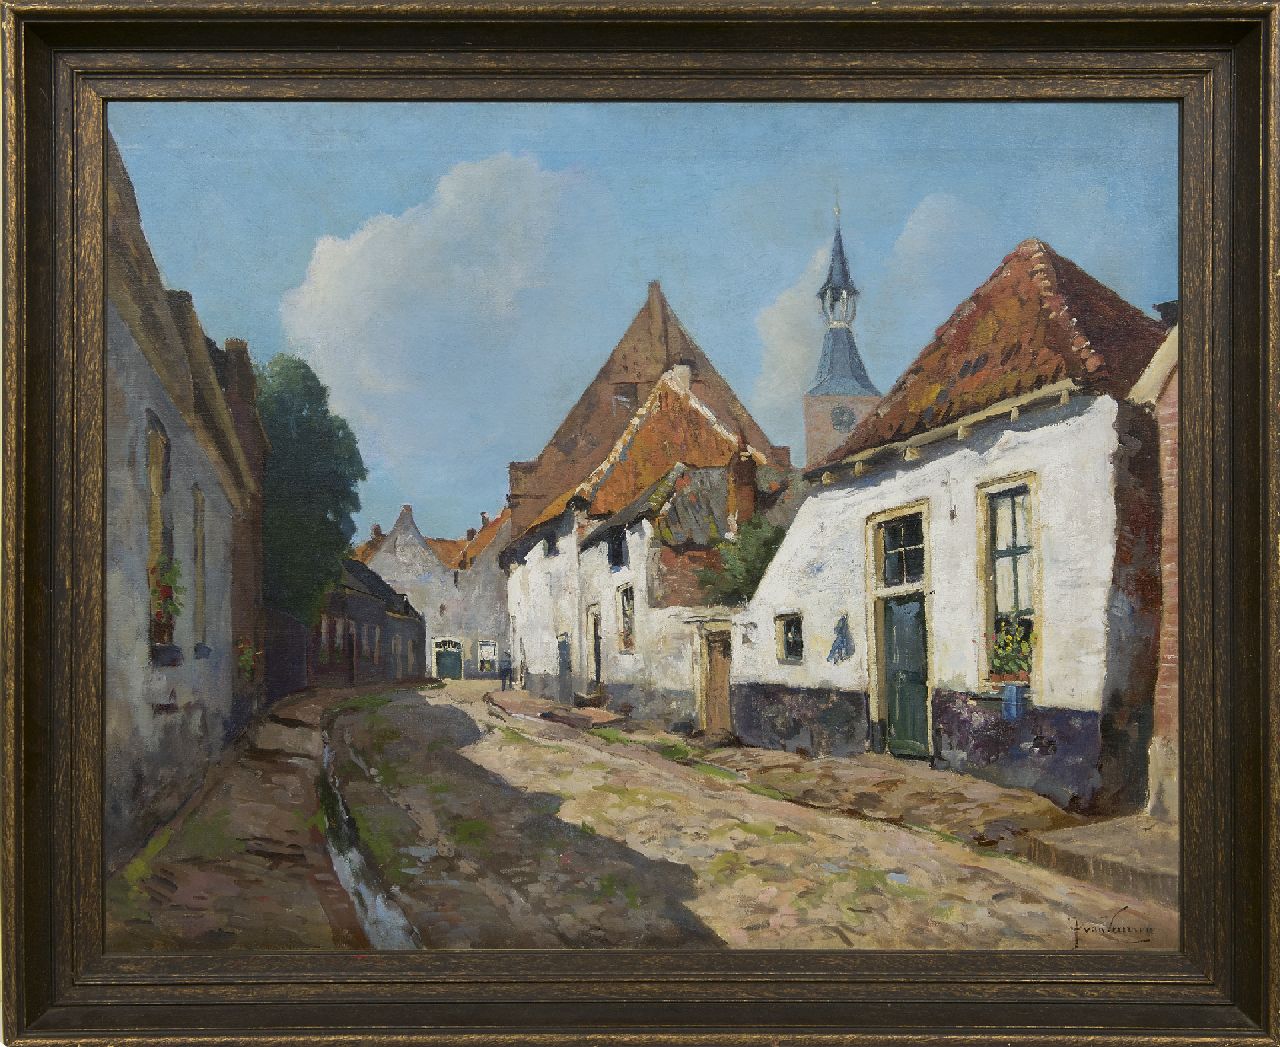 Vuuren J. van | Jan van Vuuren, A view of Adelaarshoek, Hattem, oil on canvas 66.4 x 83.2 cm, signed l.r.